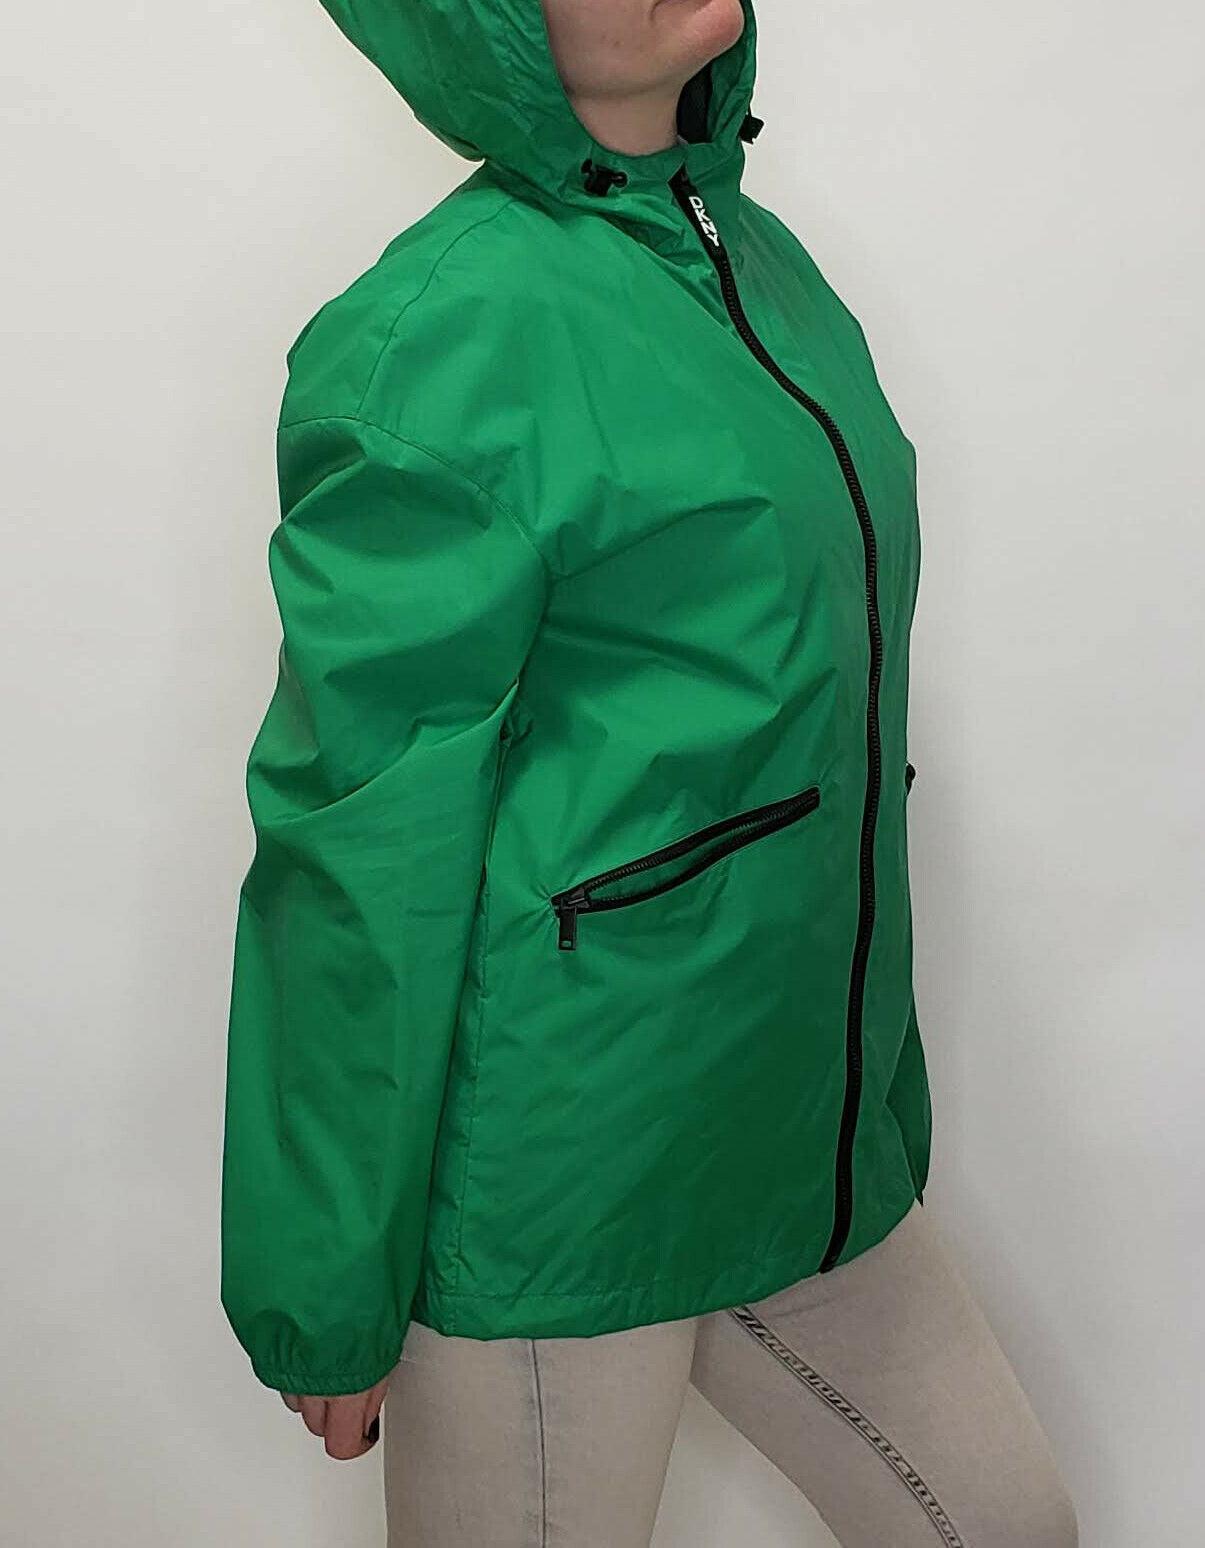 DKNY Womens Green Raincoat Jacket Hooded Logo Windbreaker Size M - SVNYFancy